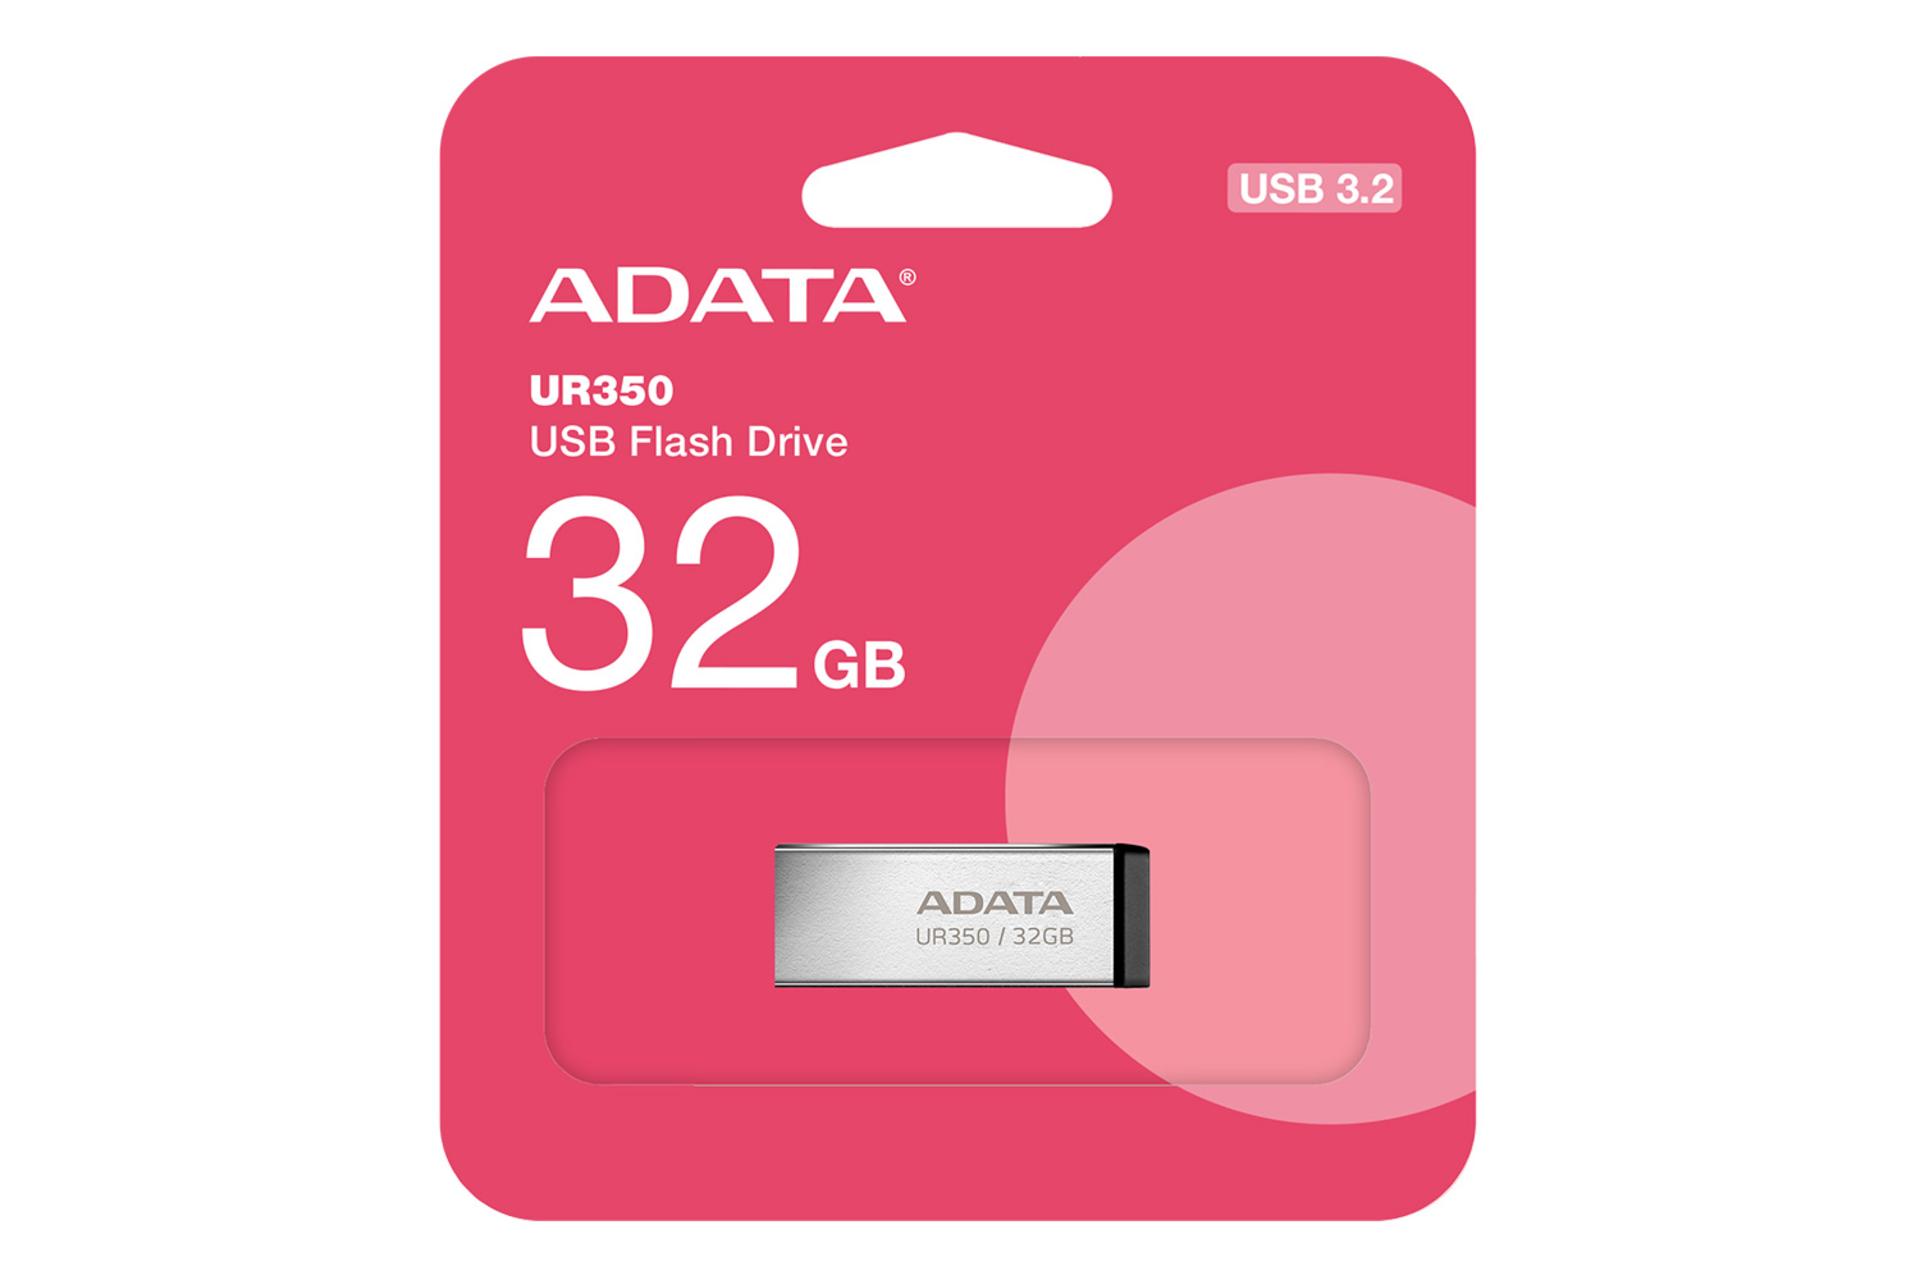 جعبه فلش مموری ای دیتا ADATA UR350 32GB USB 3.2